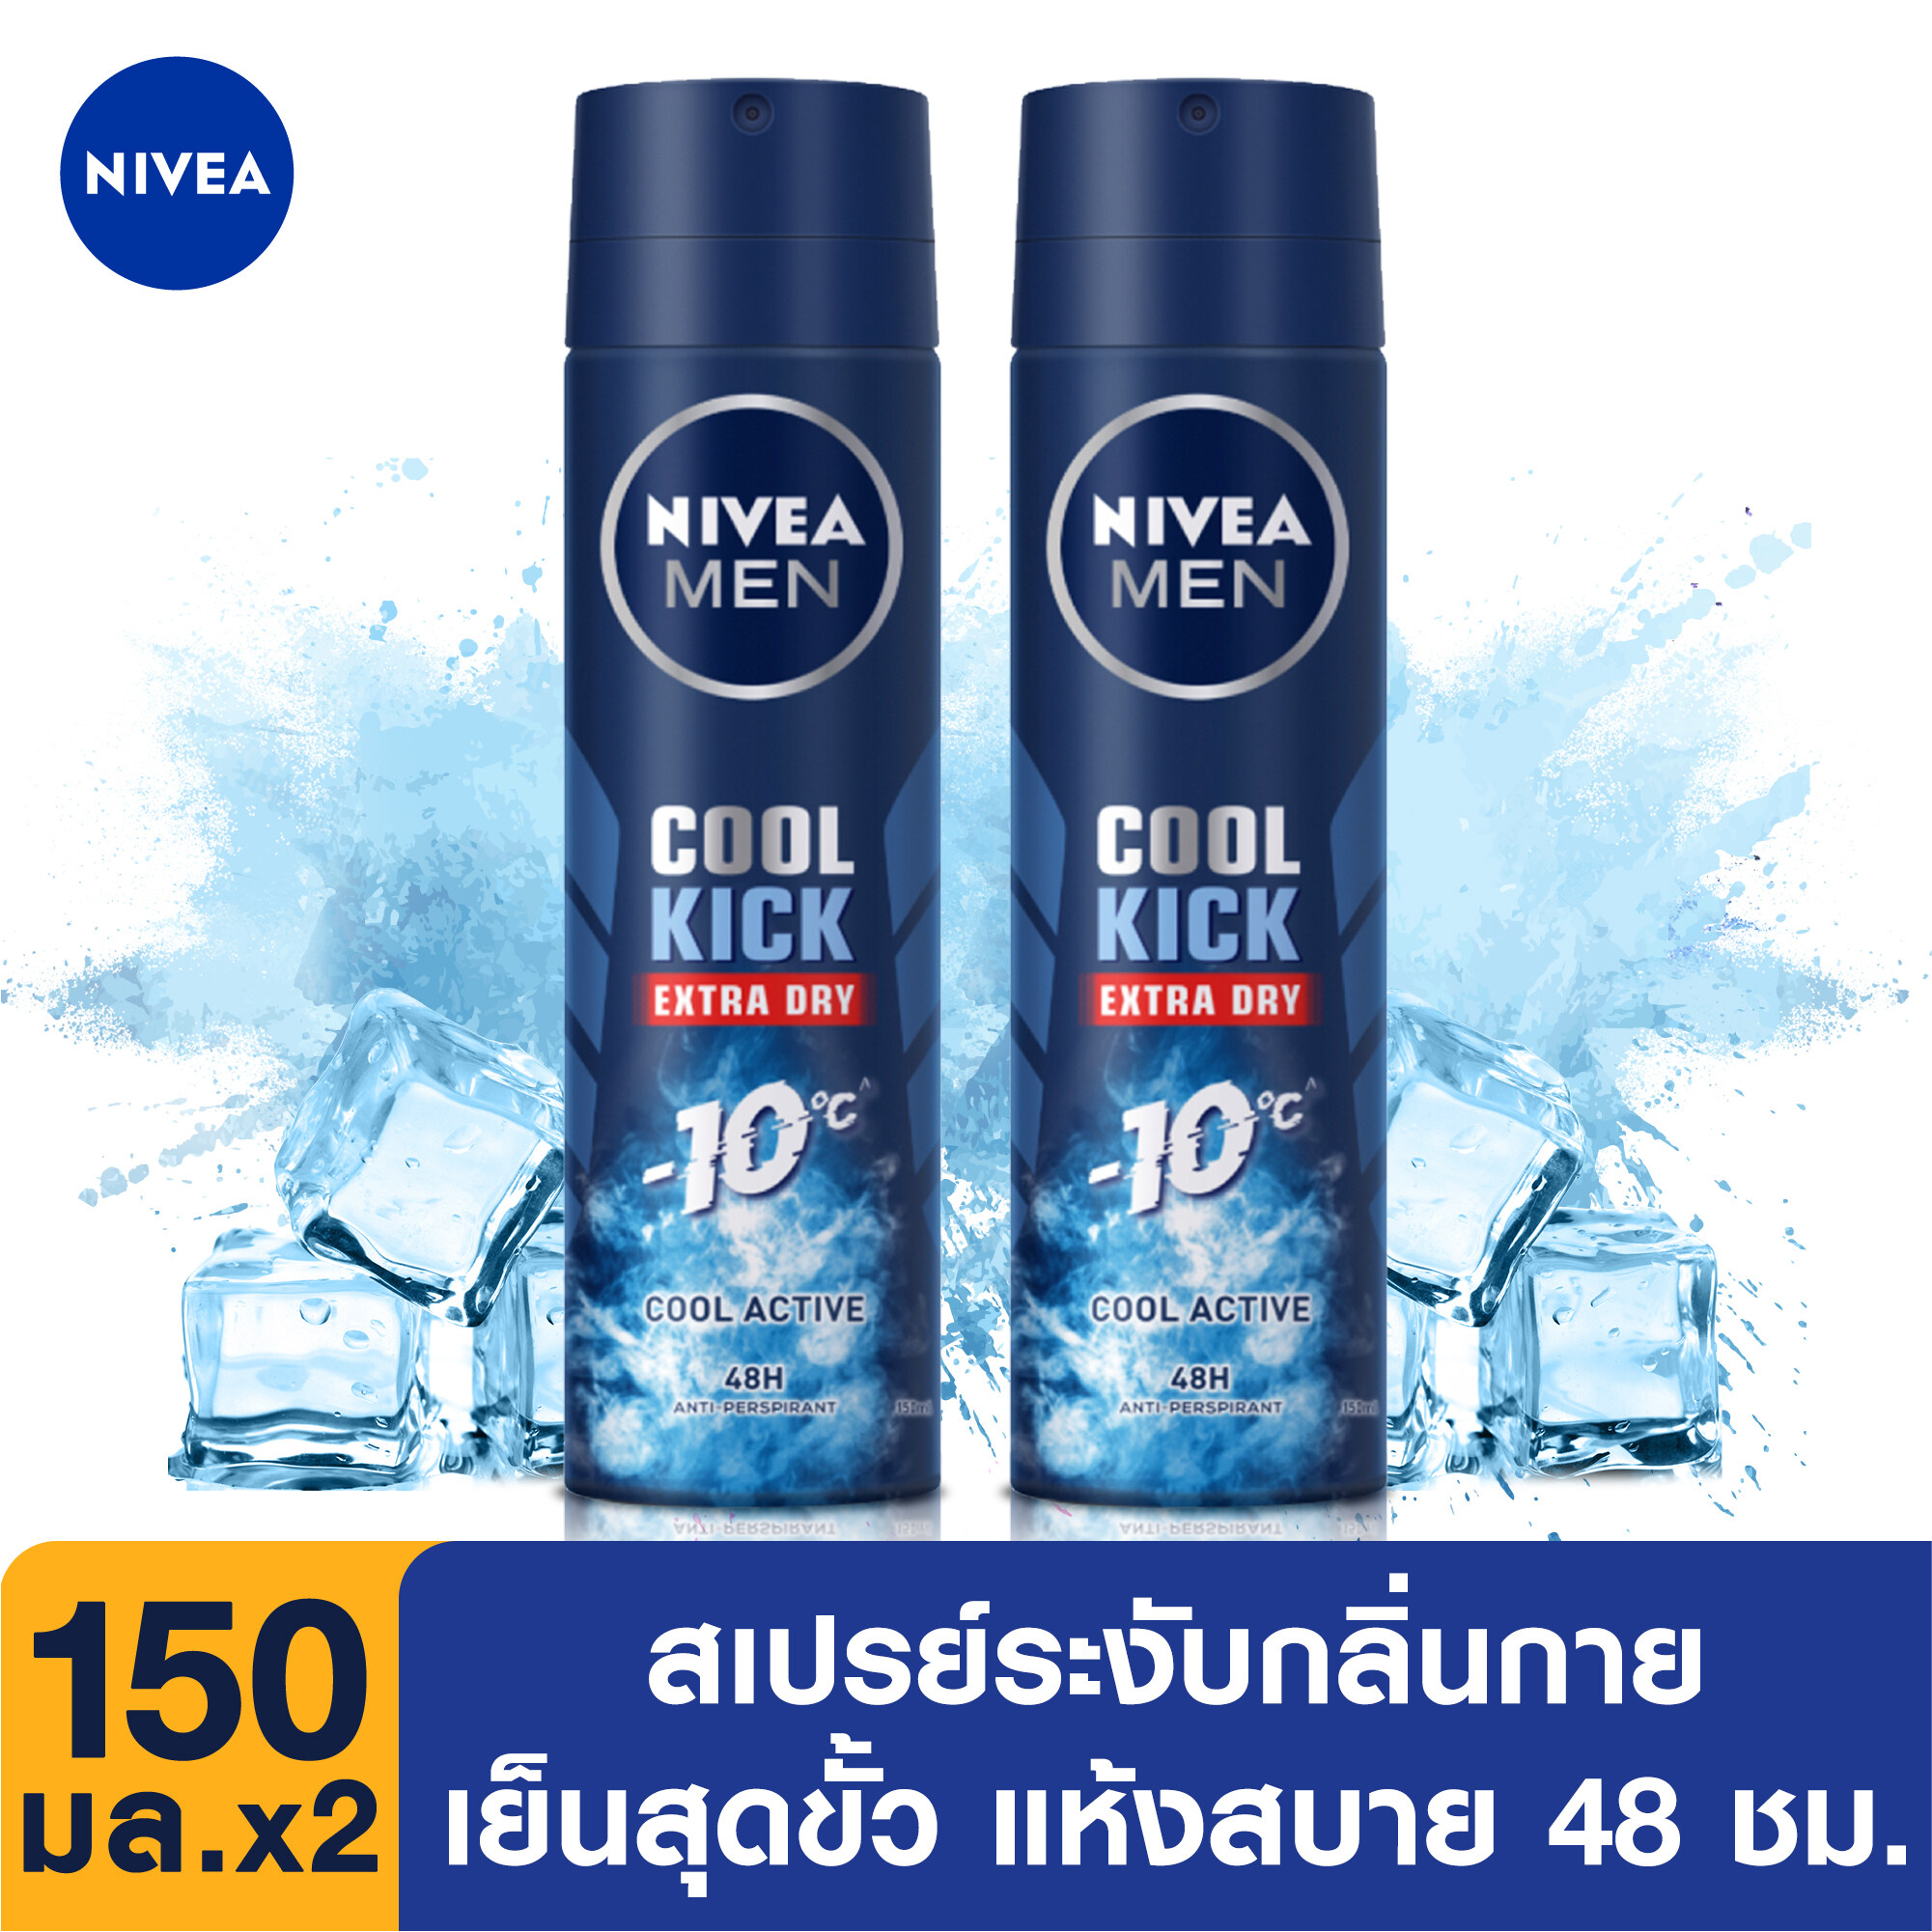 รีวิว [ส่งฟรี] นีเวีย ดีโอ เมน คูล คิก สเปรย์ ระงับกลิ่นกาย สำหรับผู้ชาย 150 มล.2ชิ้น จำนวน NIVEA Deo Men Cool Kick Spray 150 ml. 2pcs(สเปรย์ ผู้ชาย deodorant)